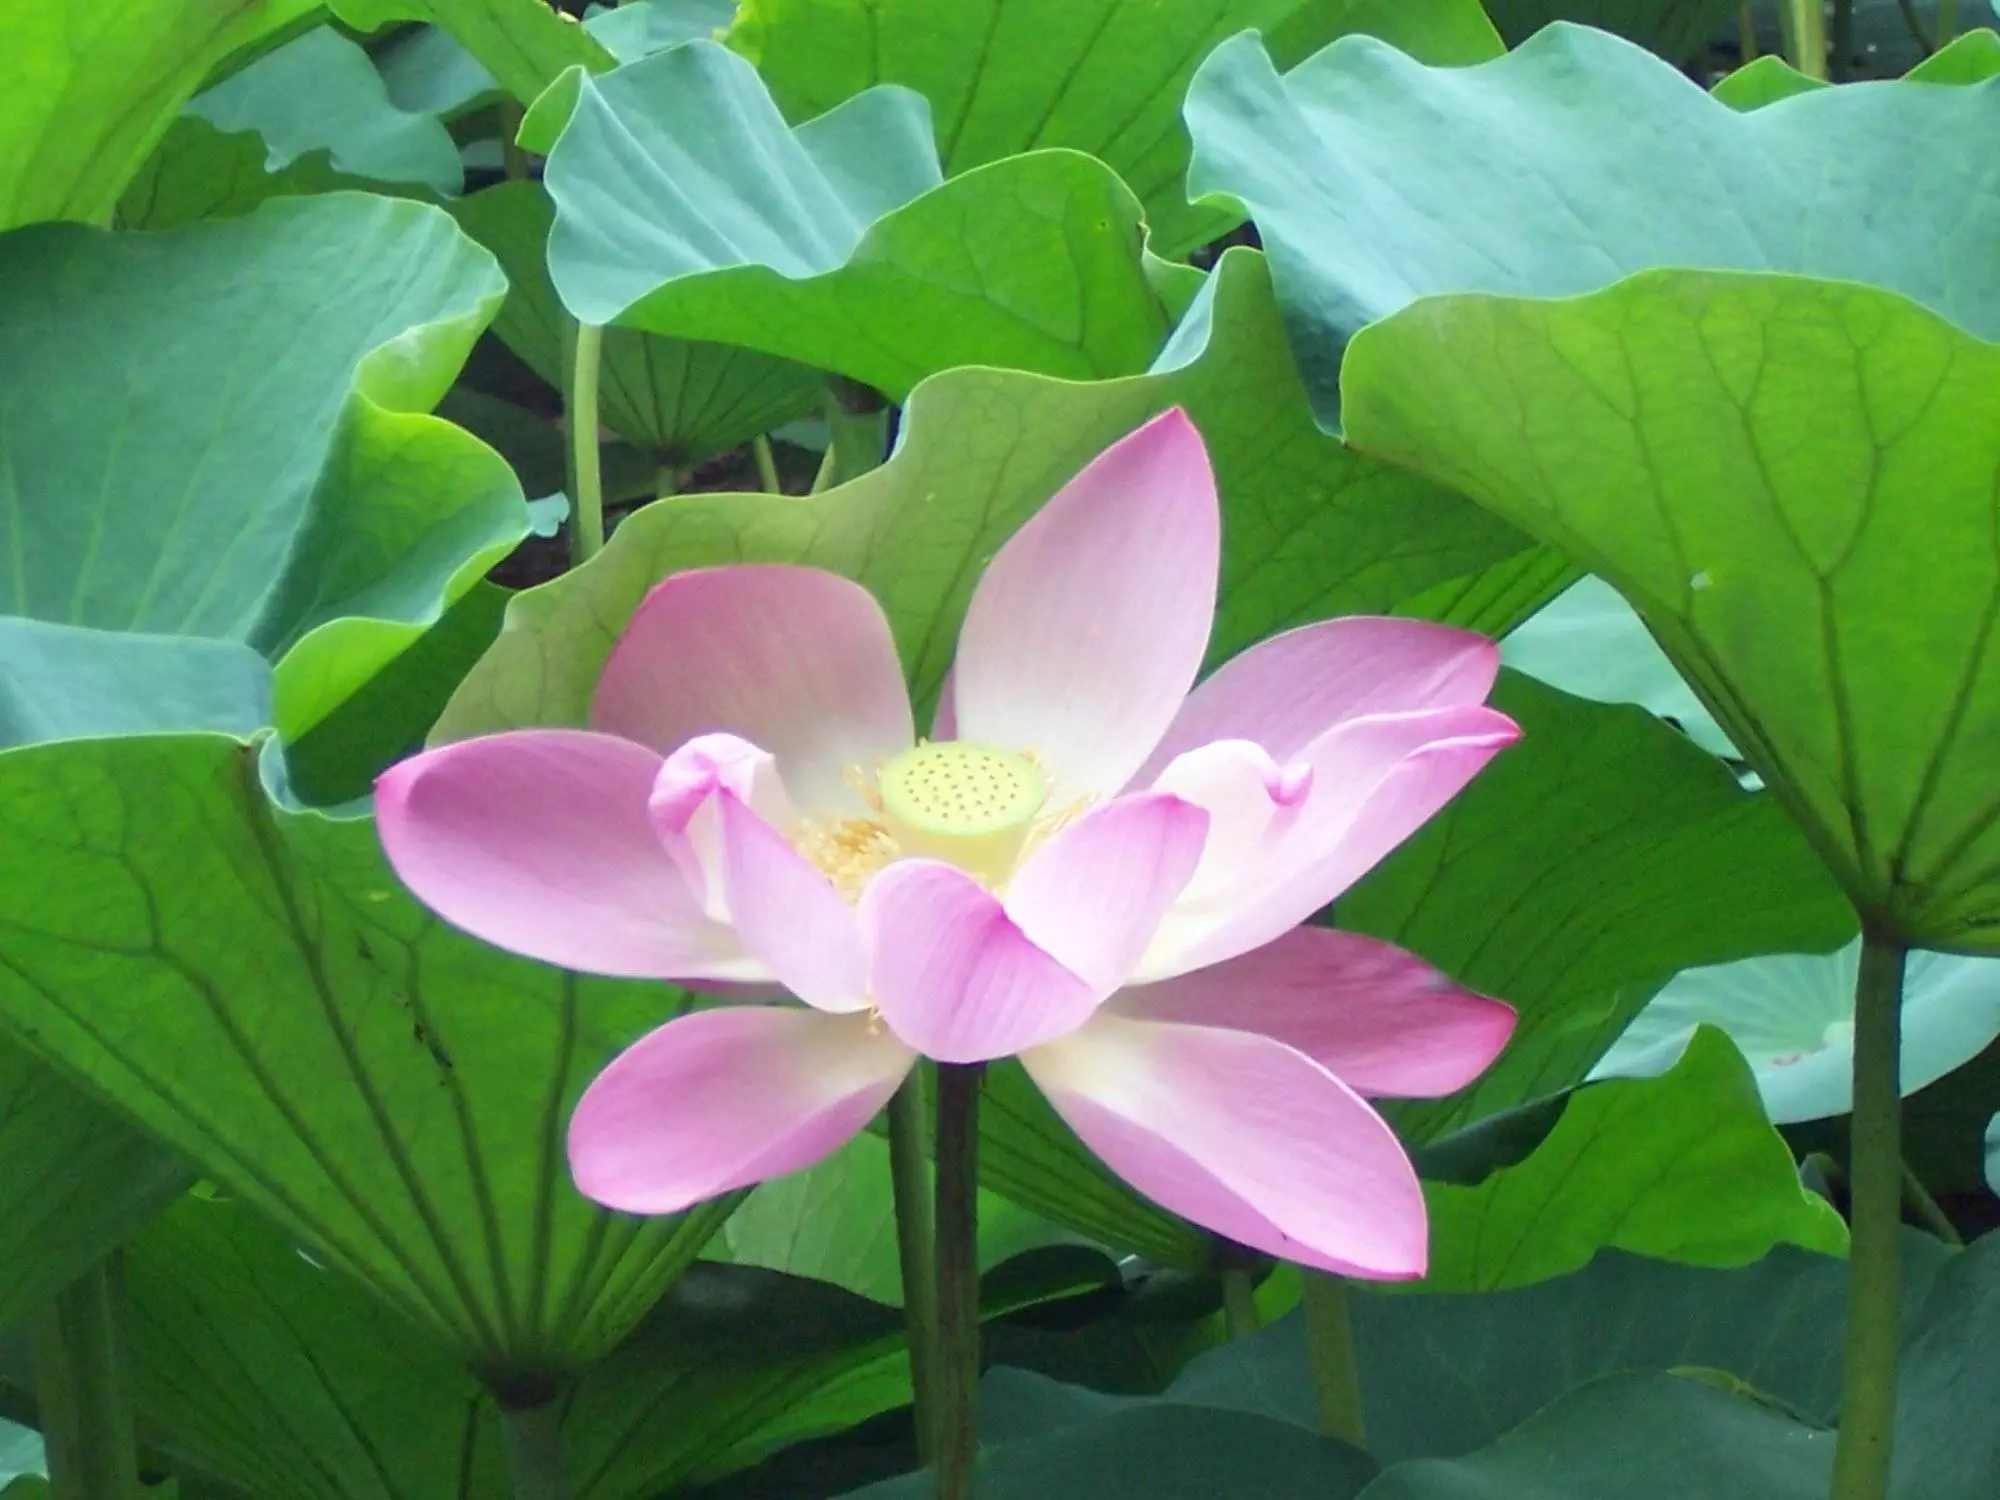 Eine rosa Lotusblume, umgeben von grünen Blättern, bietet einen ruhigen Mittelpunkt für die Meditation.